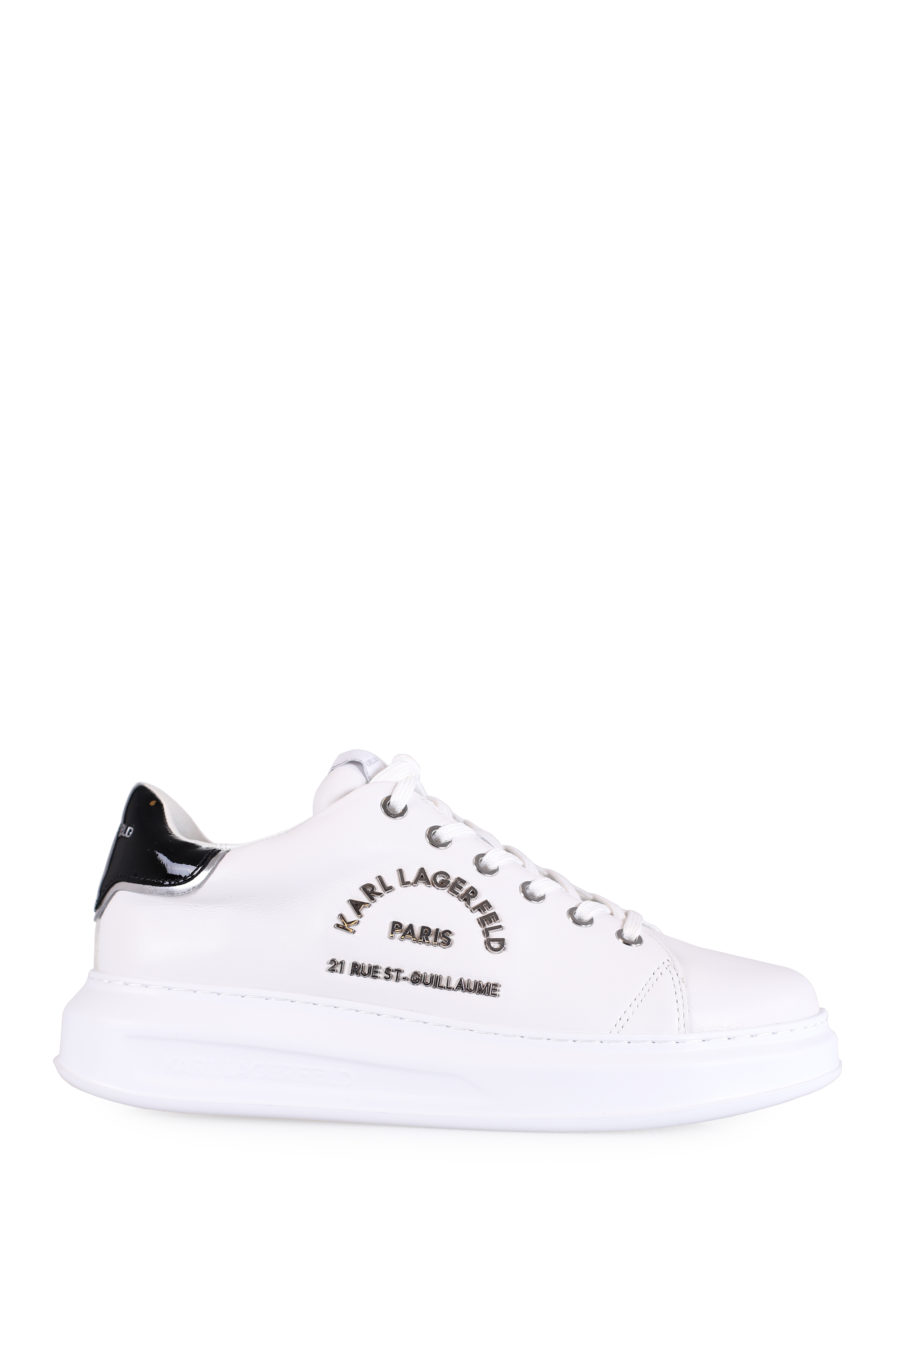 Zapatillas blancas con logotipo "Maison" plateado - IMG 0758